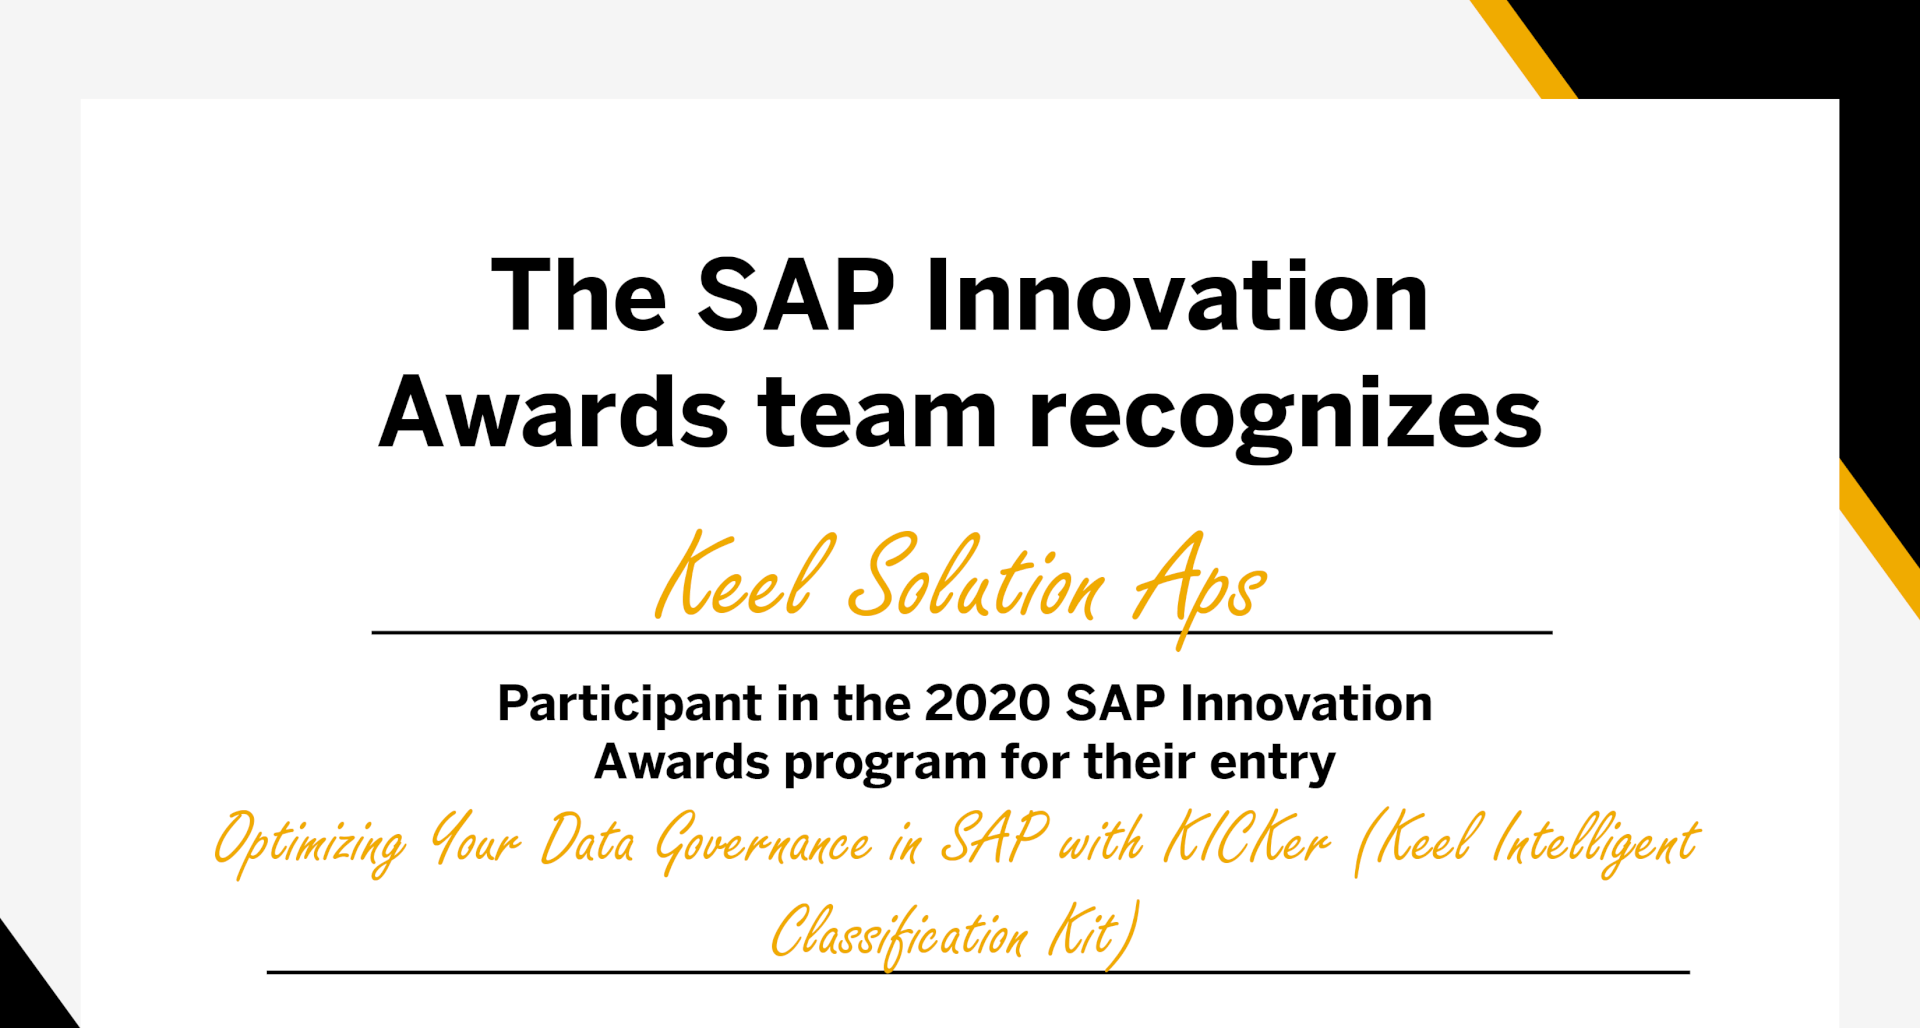 SAP Innovation Awards 2020 Keel Solution Aps Digital Certificate